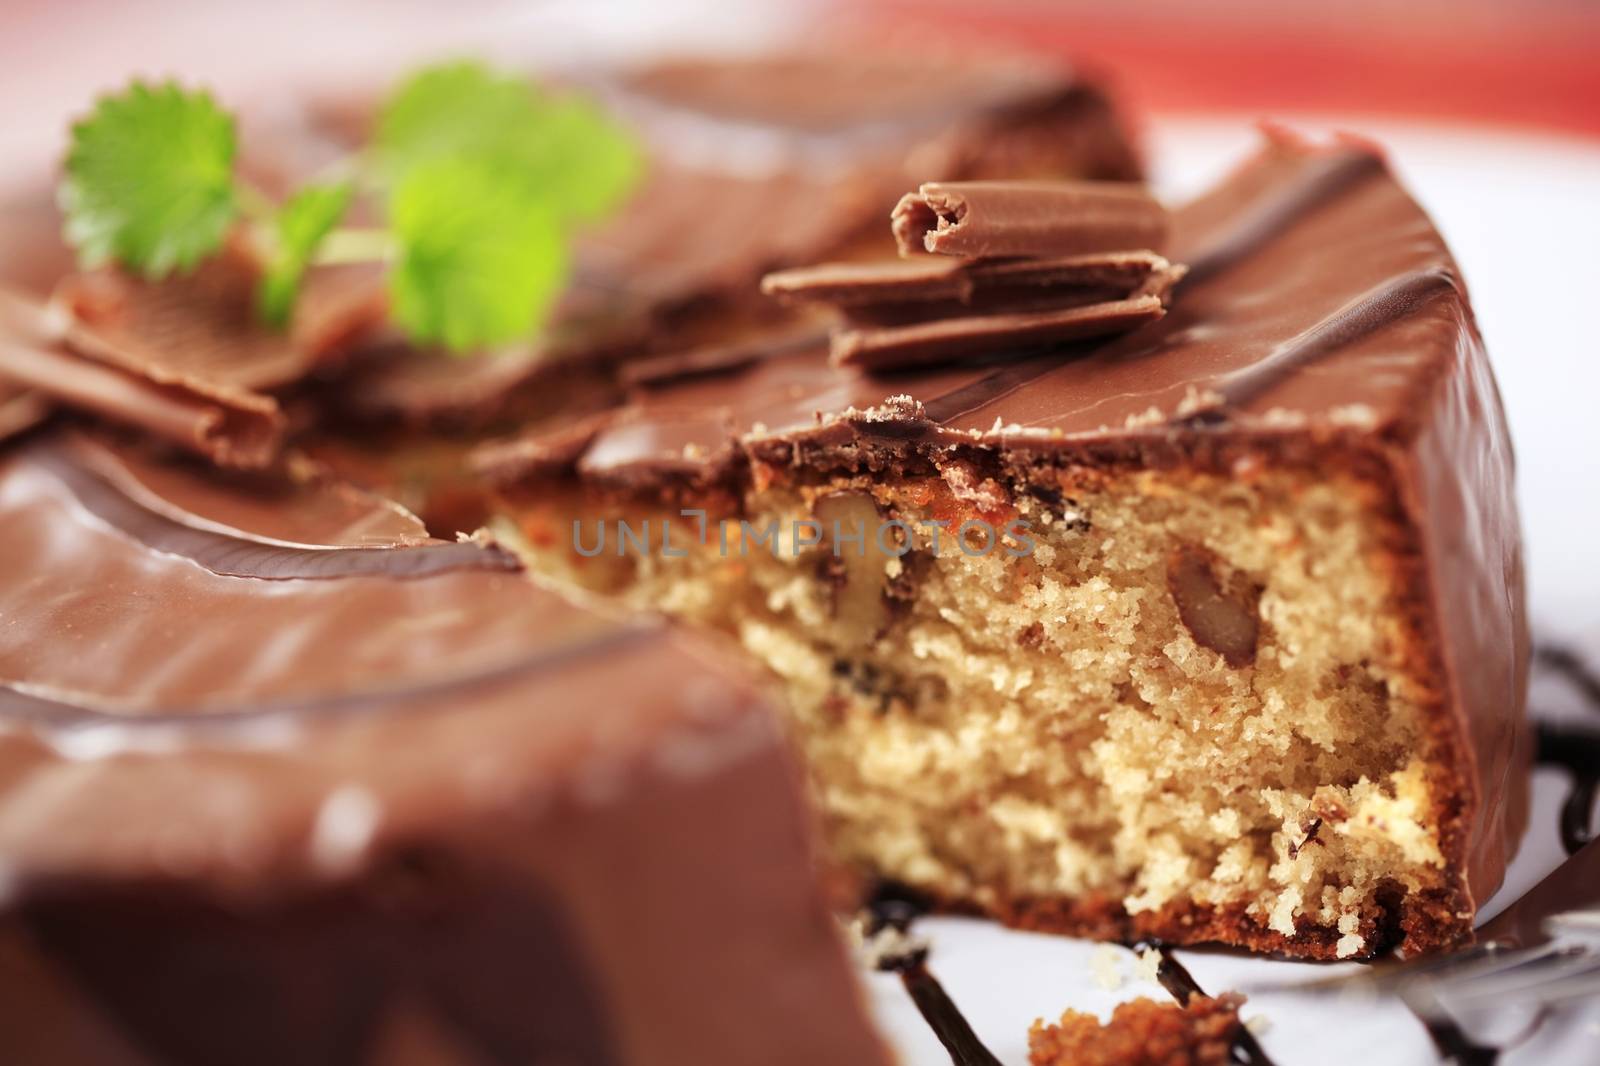 Chocolate-glazed cake by Digifoodstock